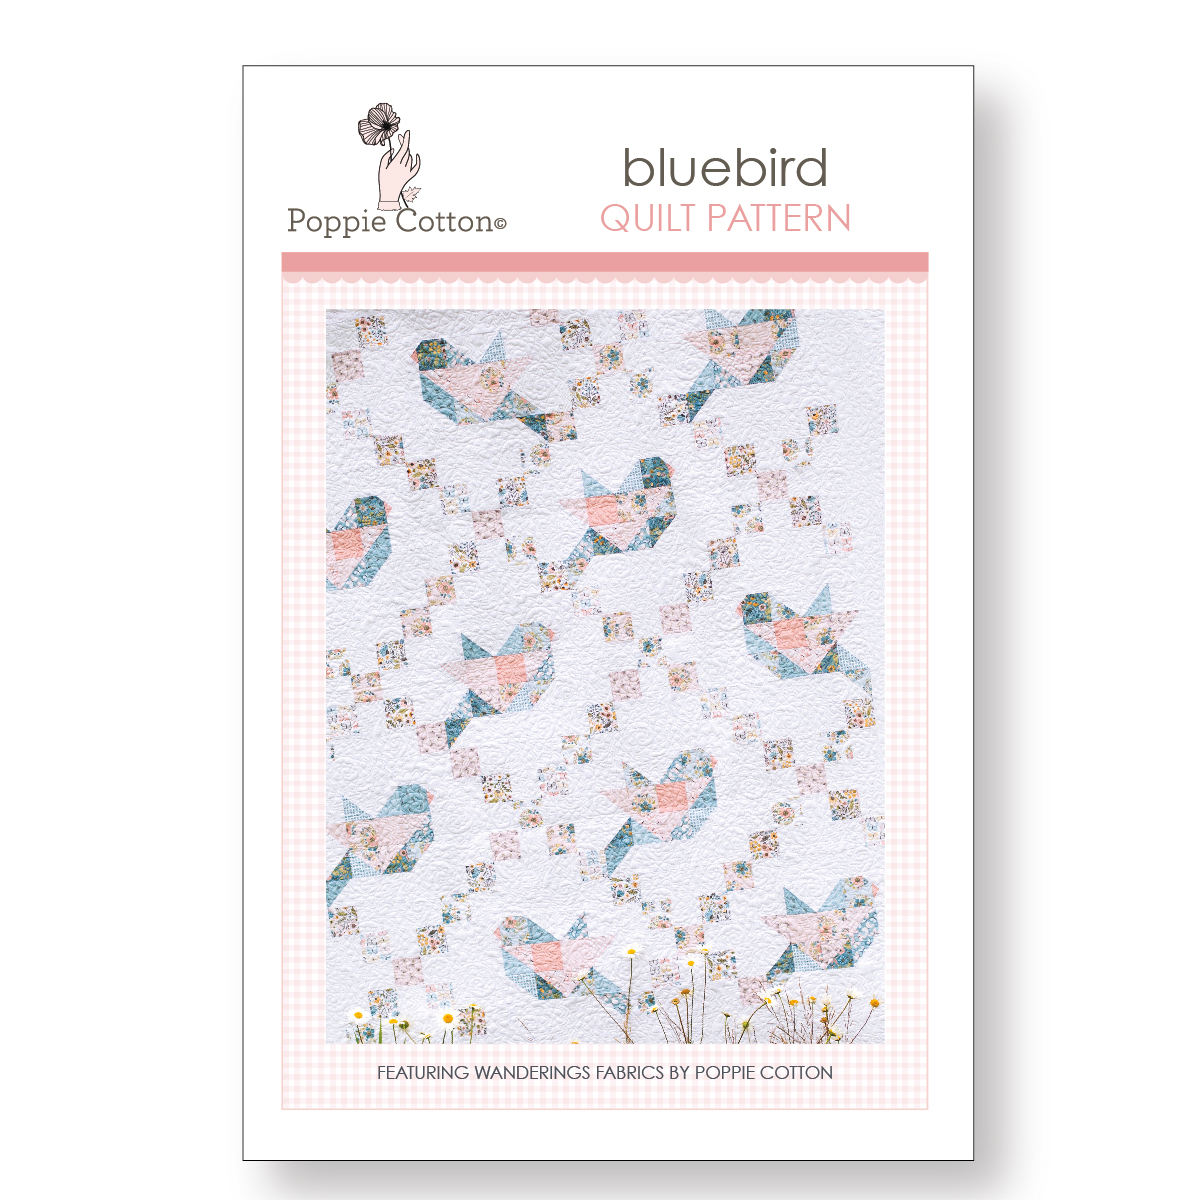 Bluebird quilt pattern